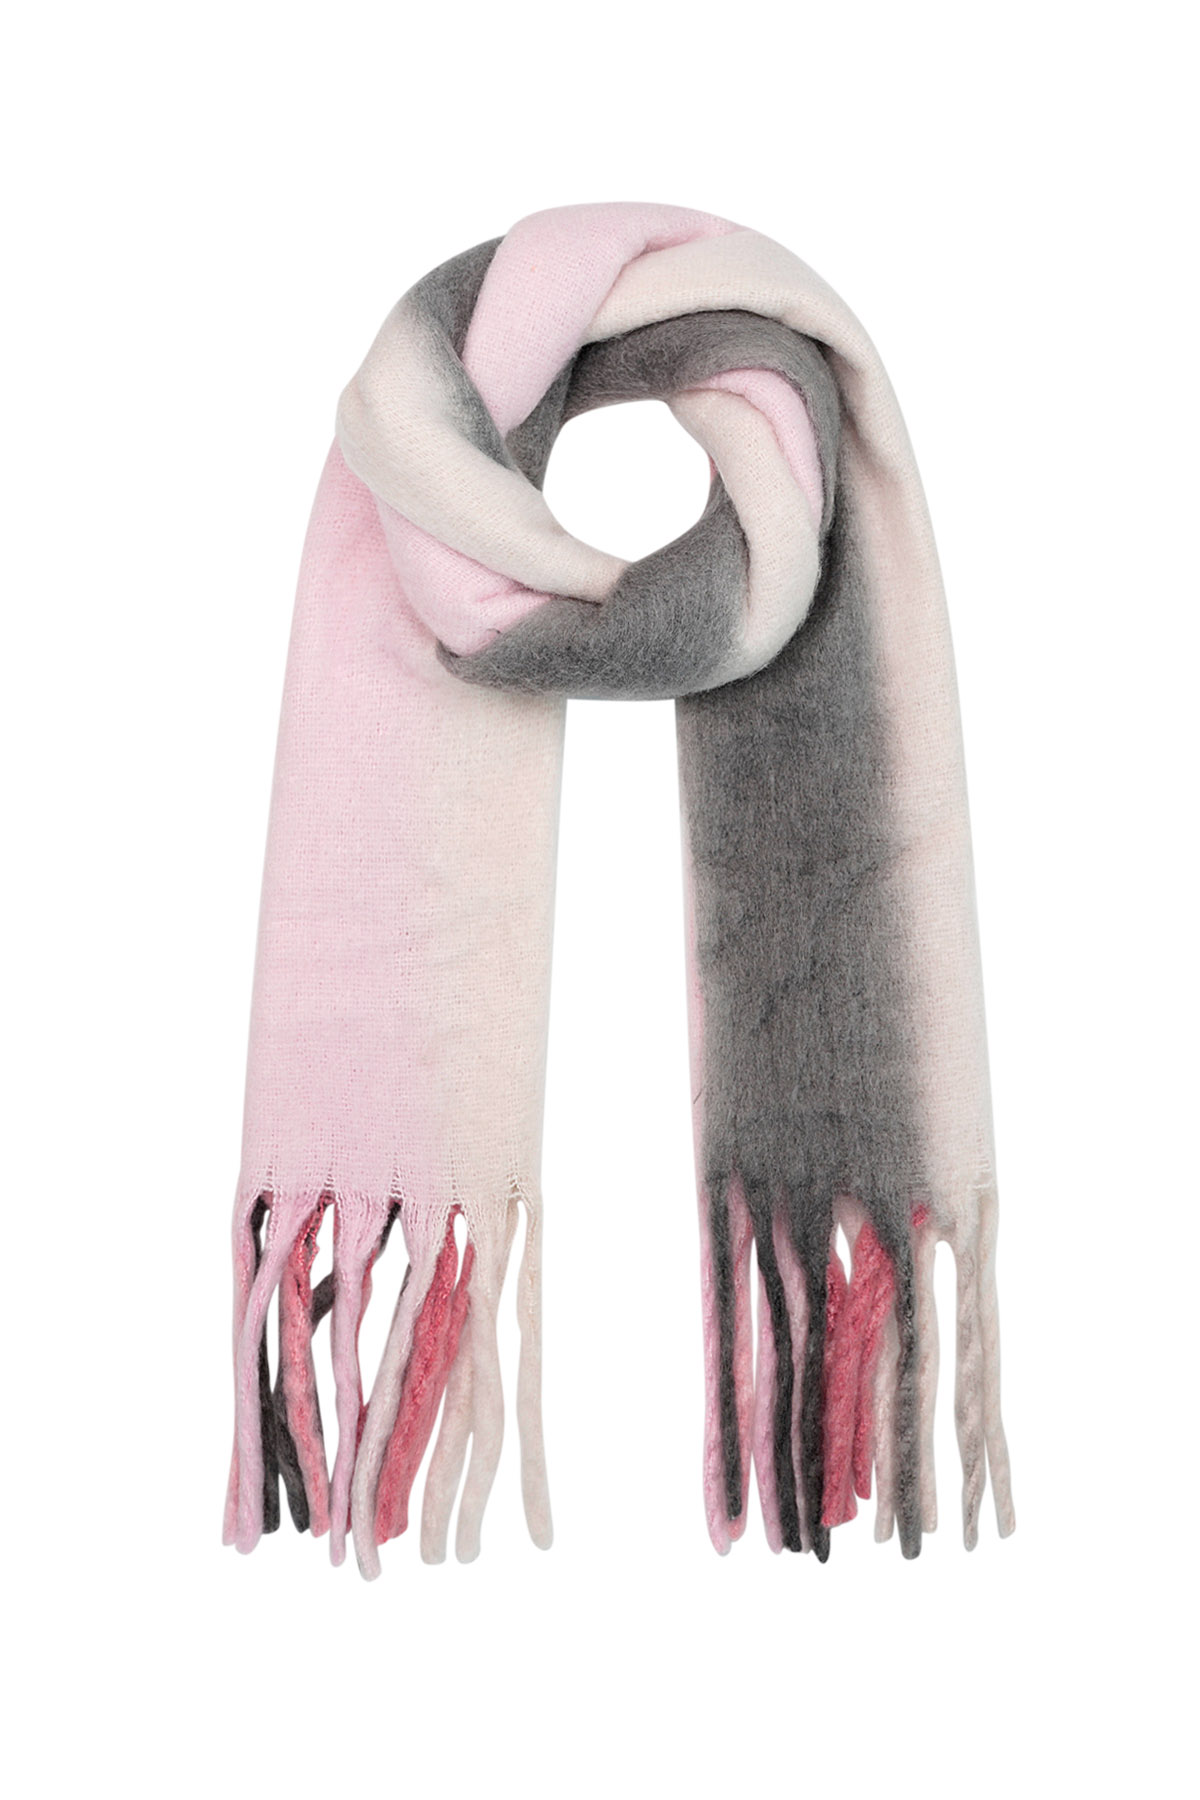 Echarpe d'hiver couleurs ombrées rose/gris Polyester h5 